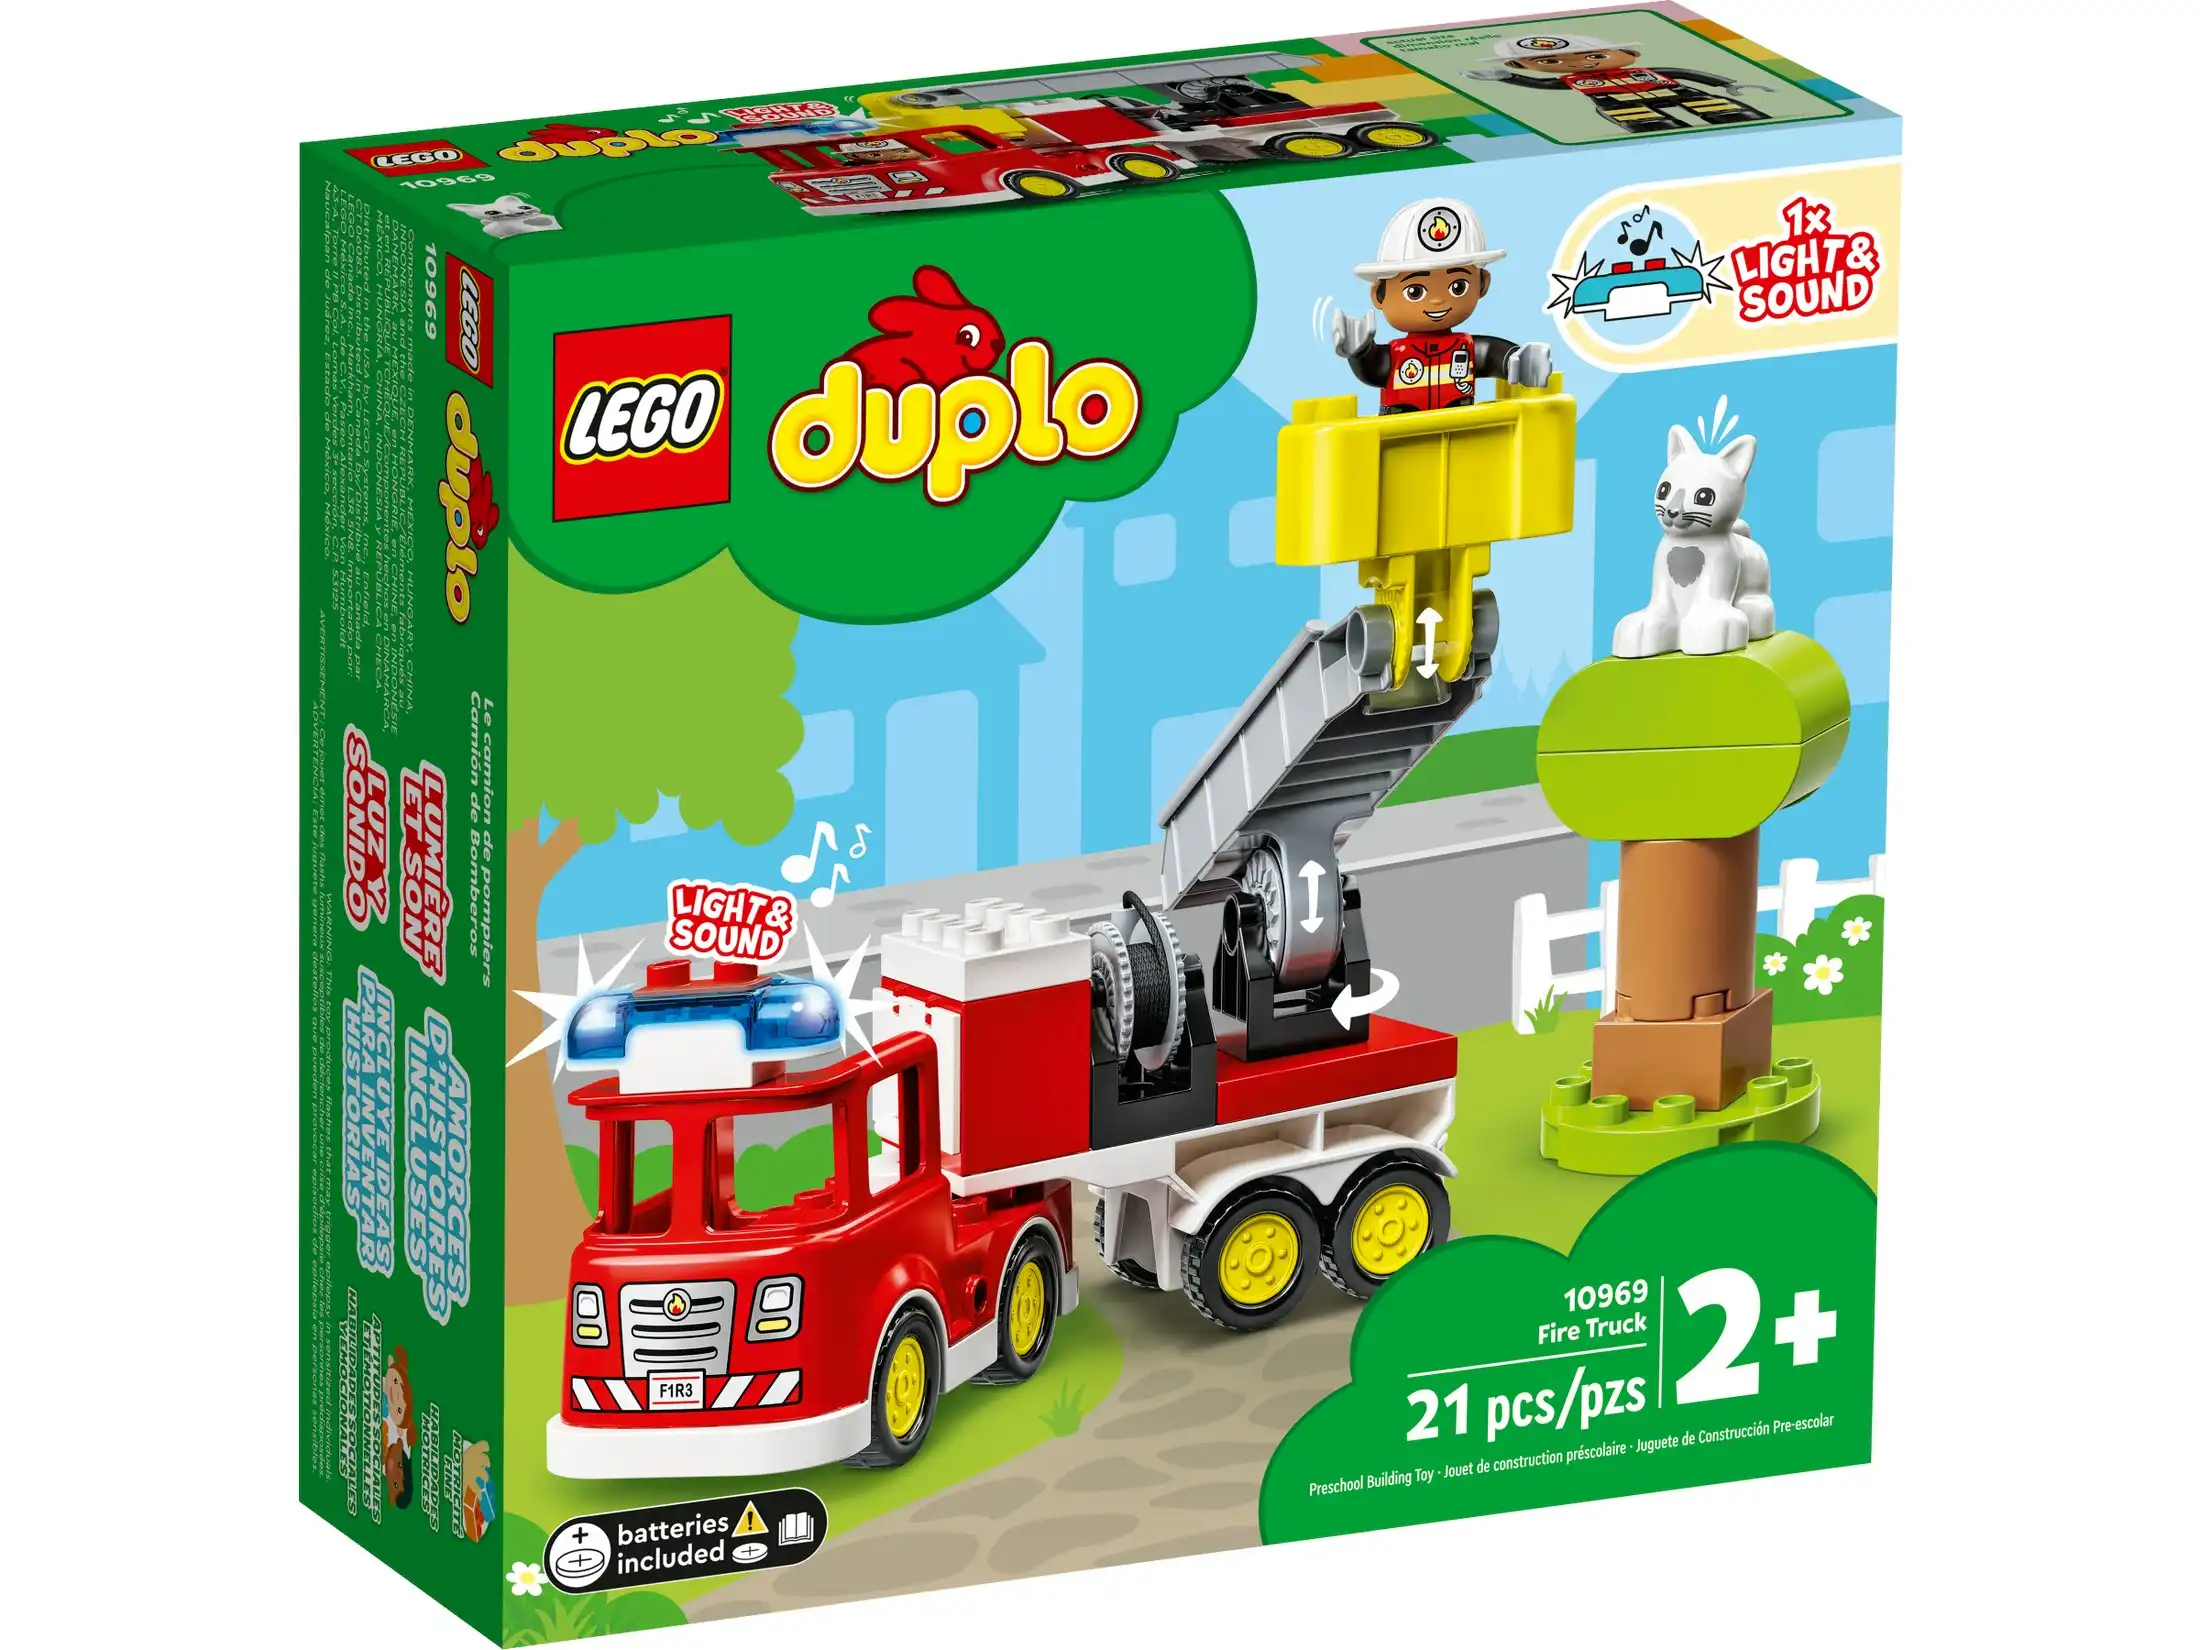 LEGO 10969 Fire Truck - Duplo